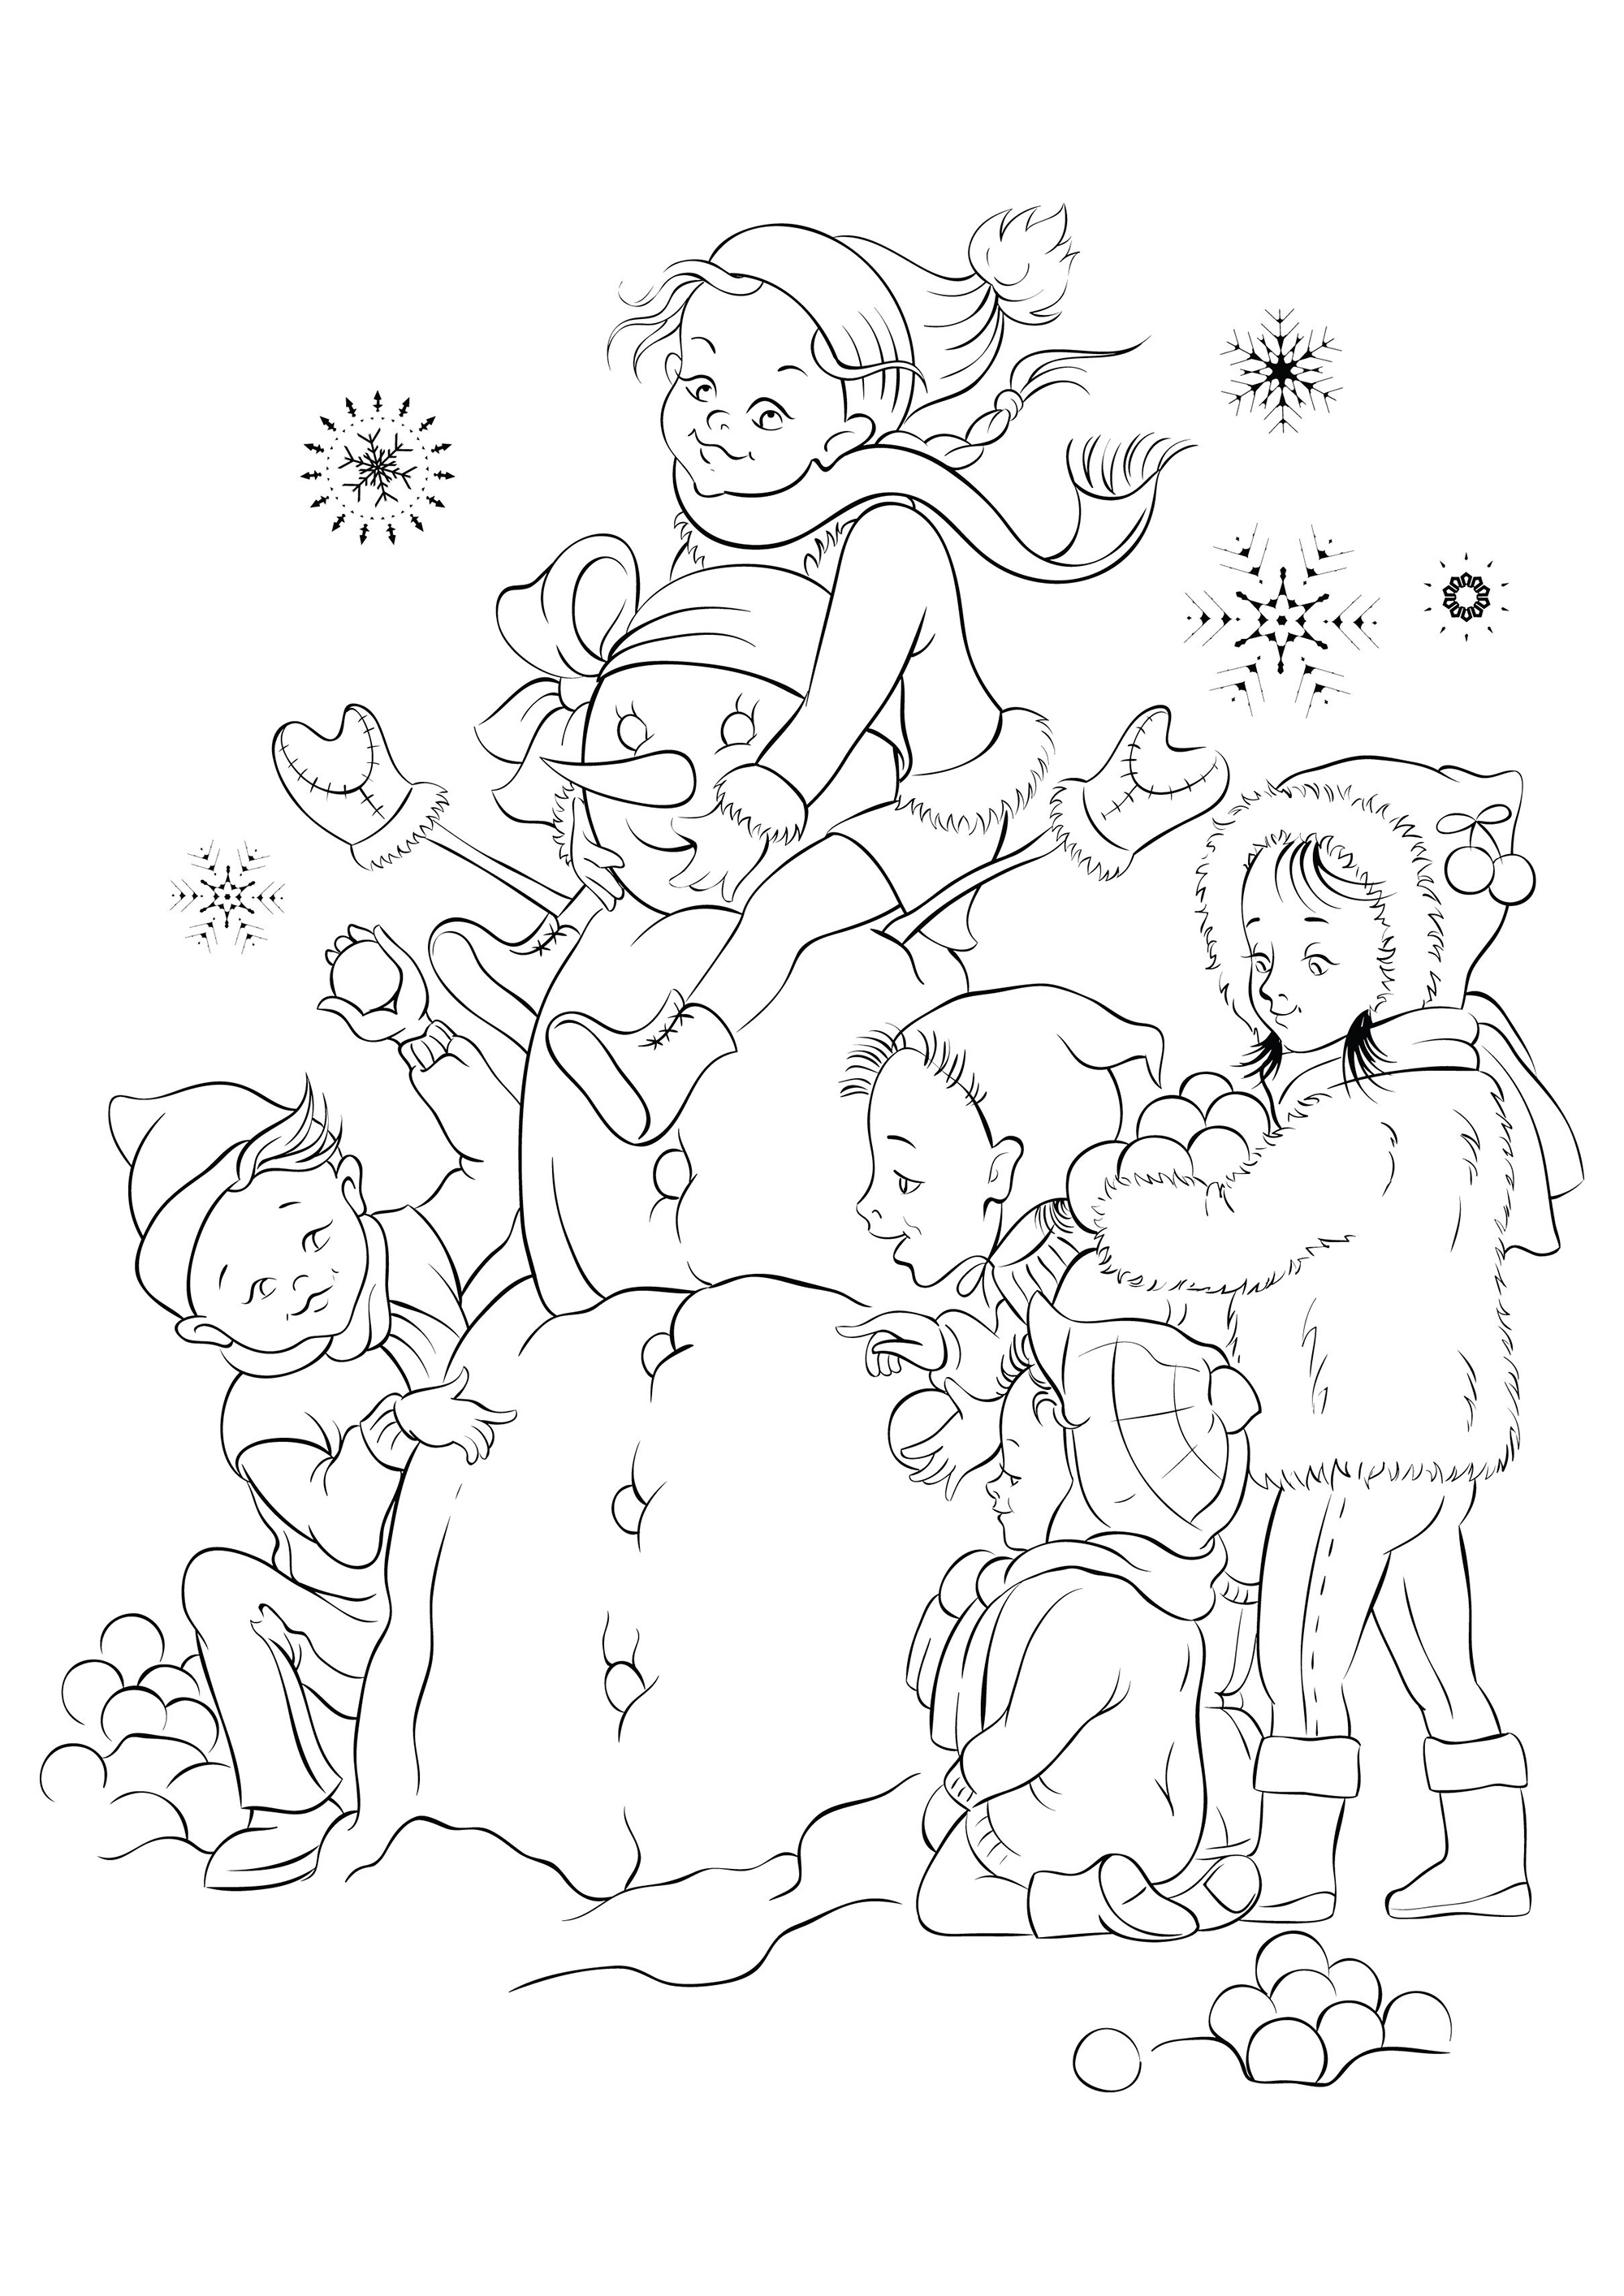 Enfants joyeux en train de faire un bonhomme de neige